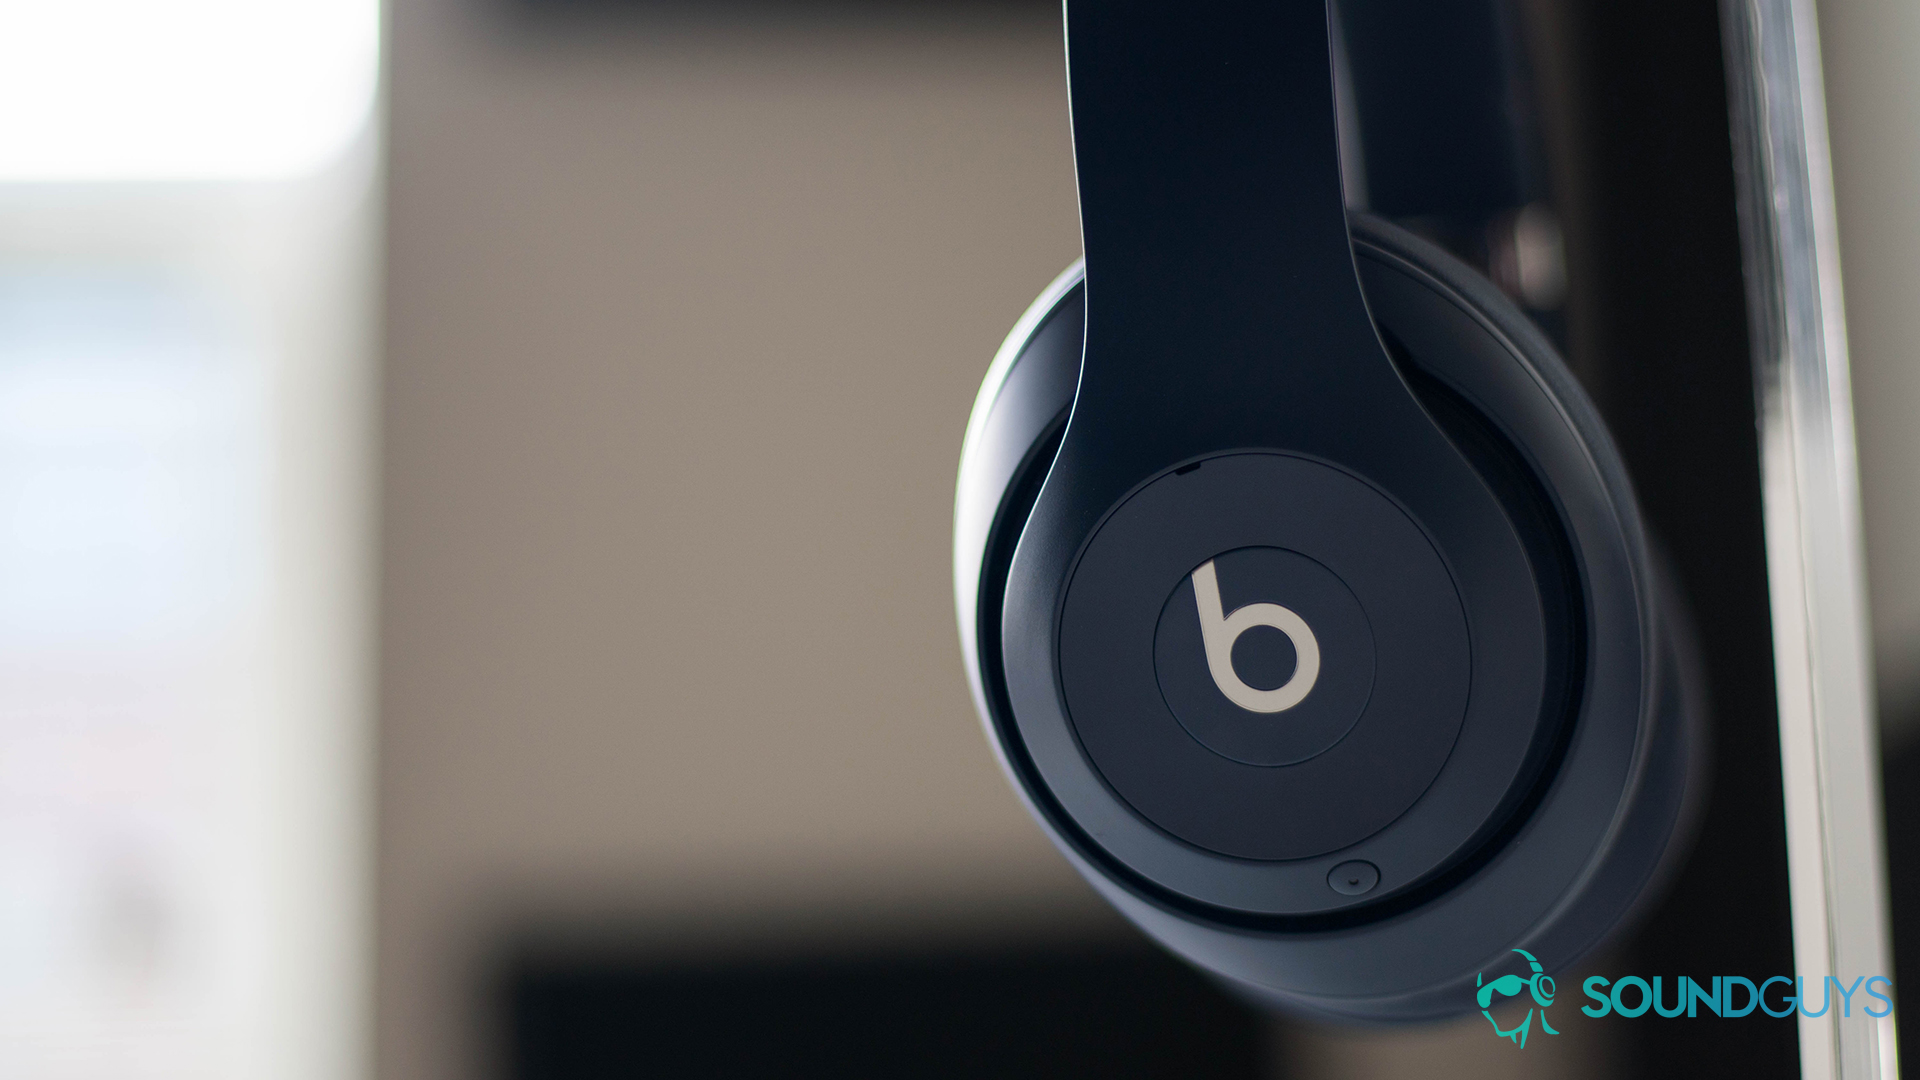 hardware ramp Laat je zien Best Beats headphones: For the home or commute - SoundGuys